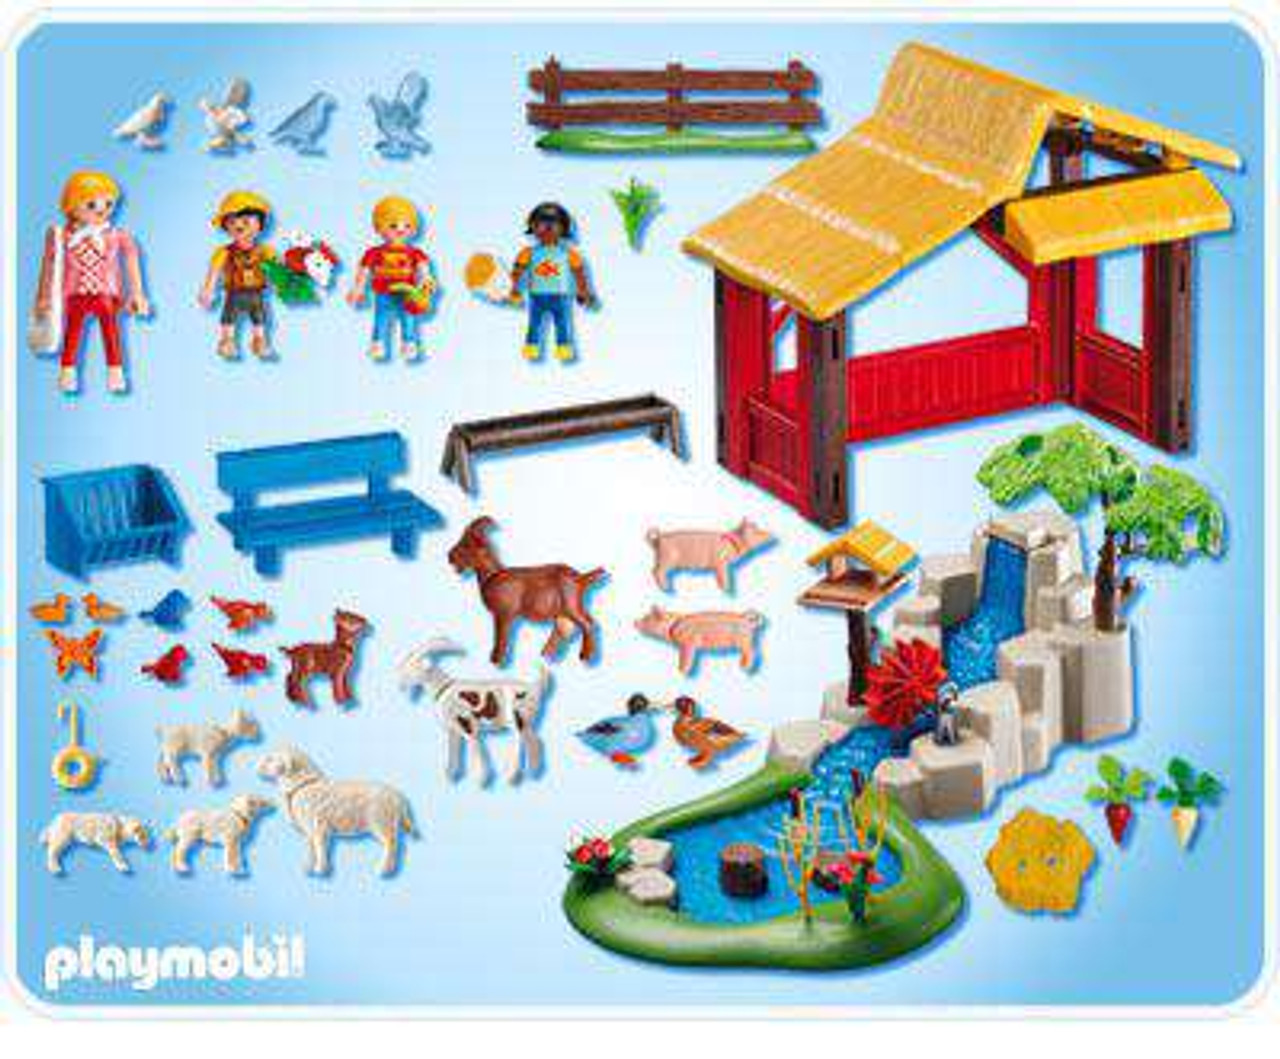 Playmobil Childrens Zoo Set 4851 - ToyWiz